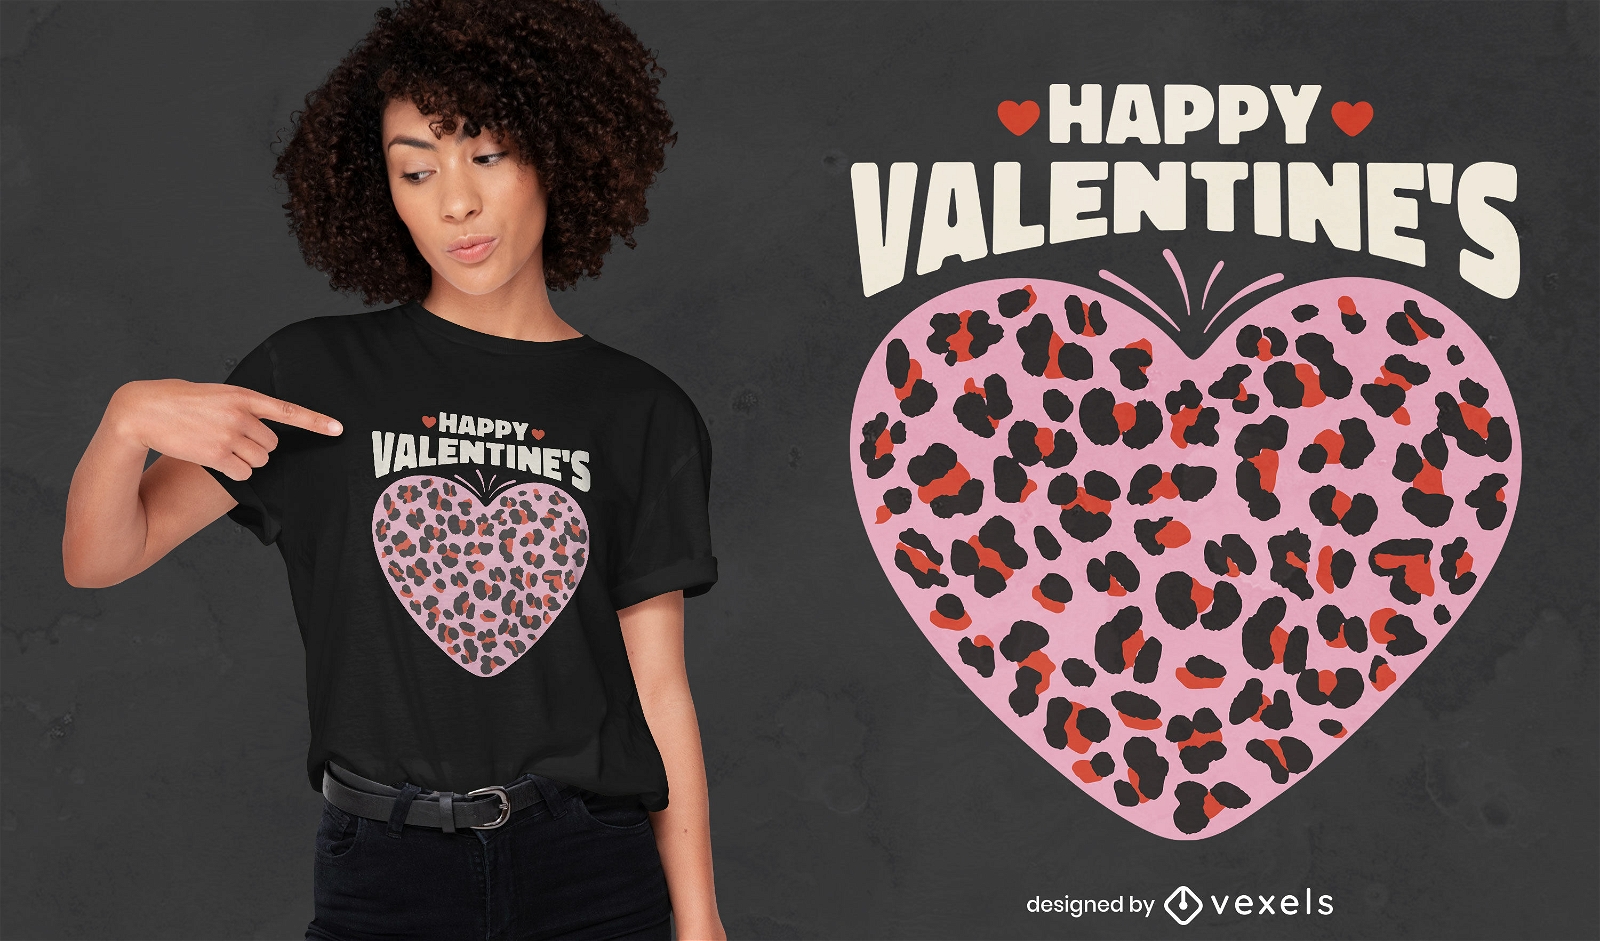 Leopard print heart t-shirt design